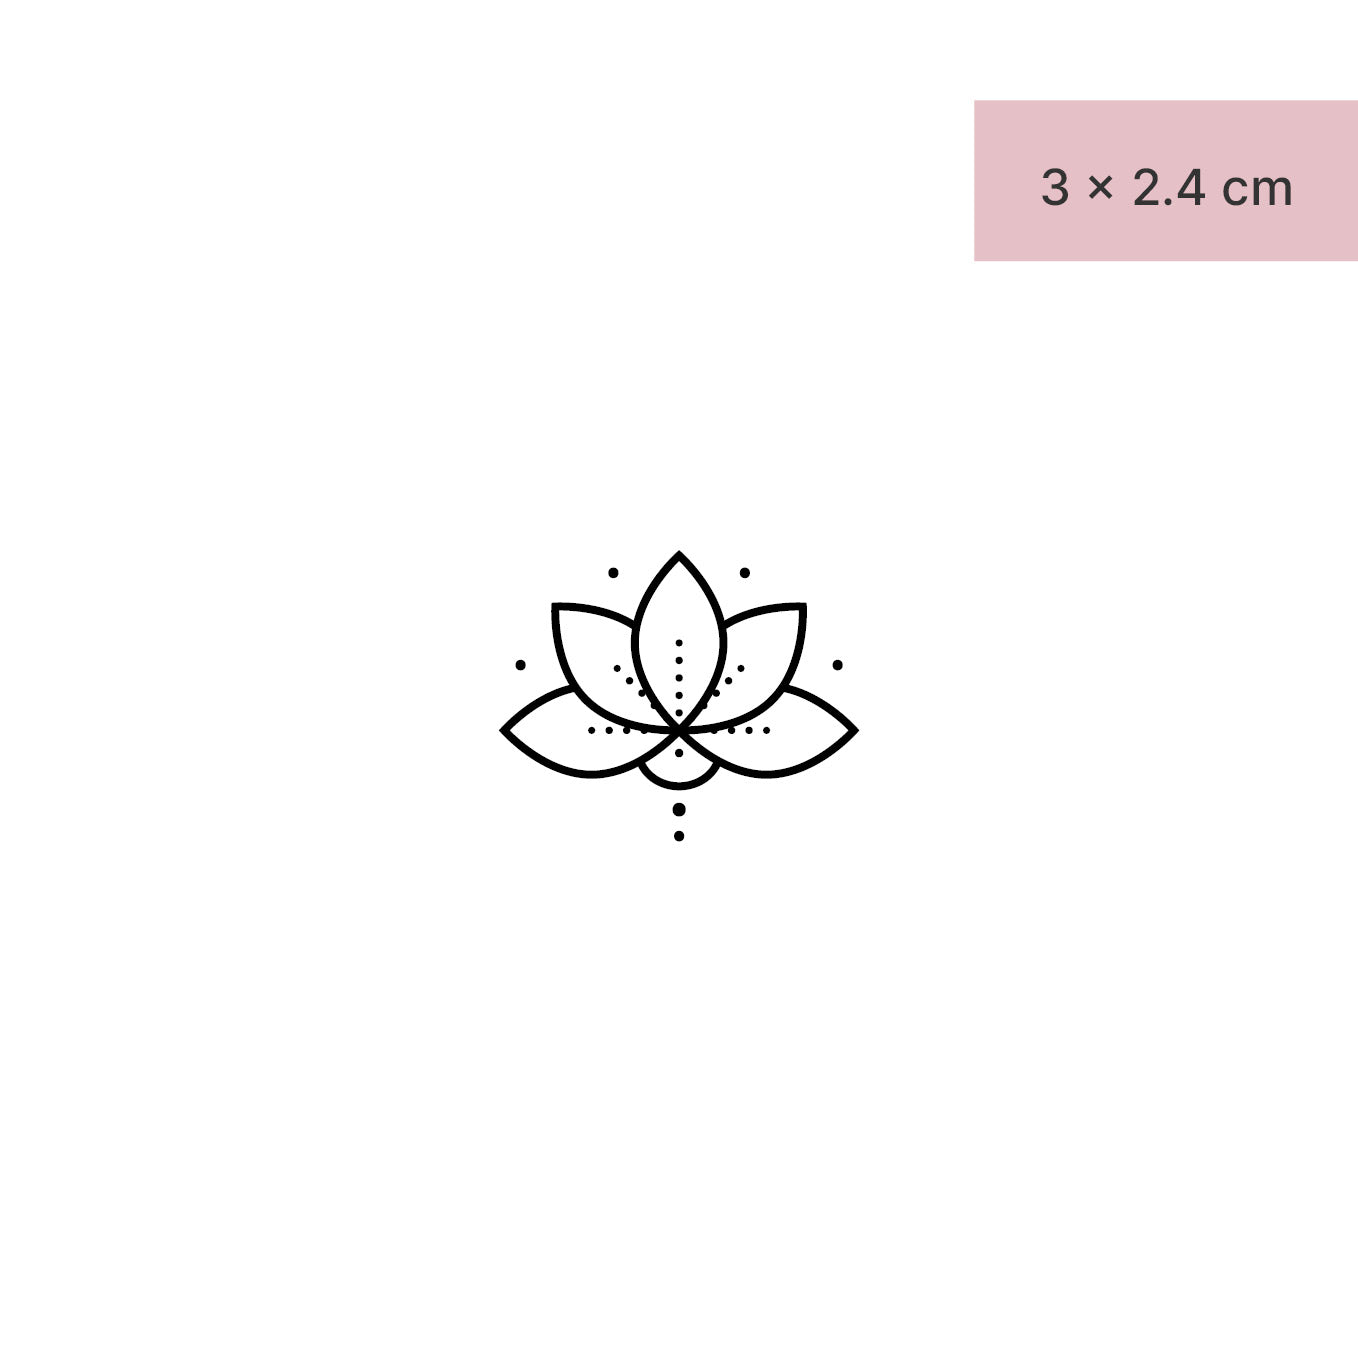 Lotusblume mit Punkten Tattoo von minink, der Marke für temporäre Tattoos.